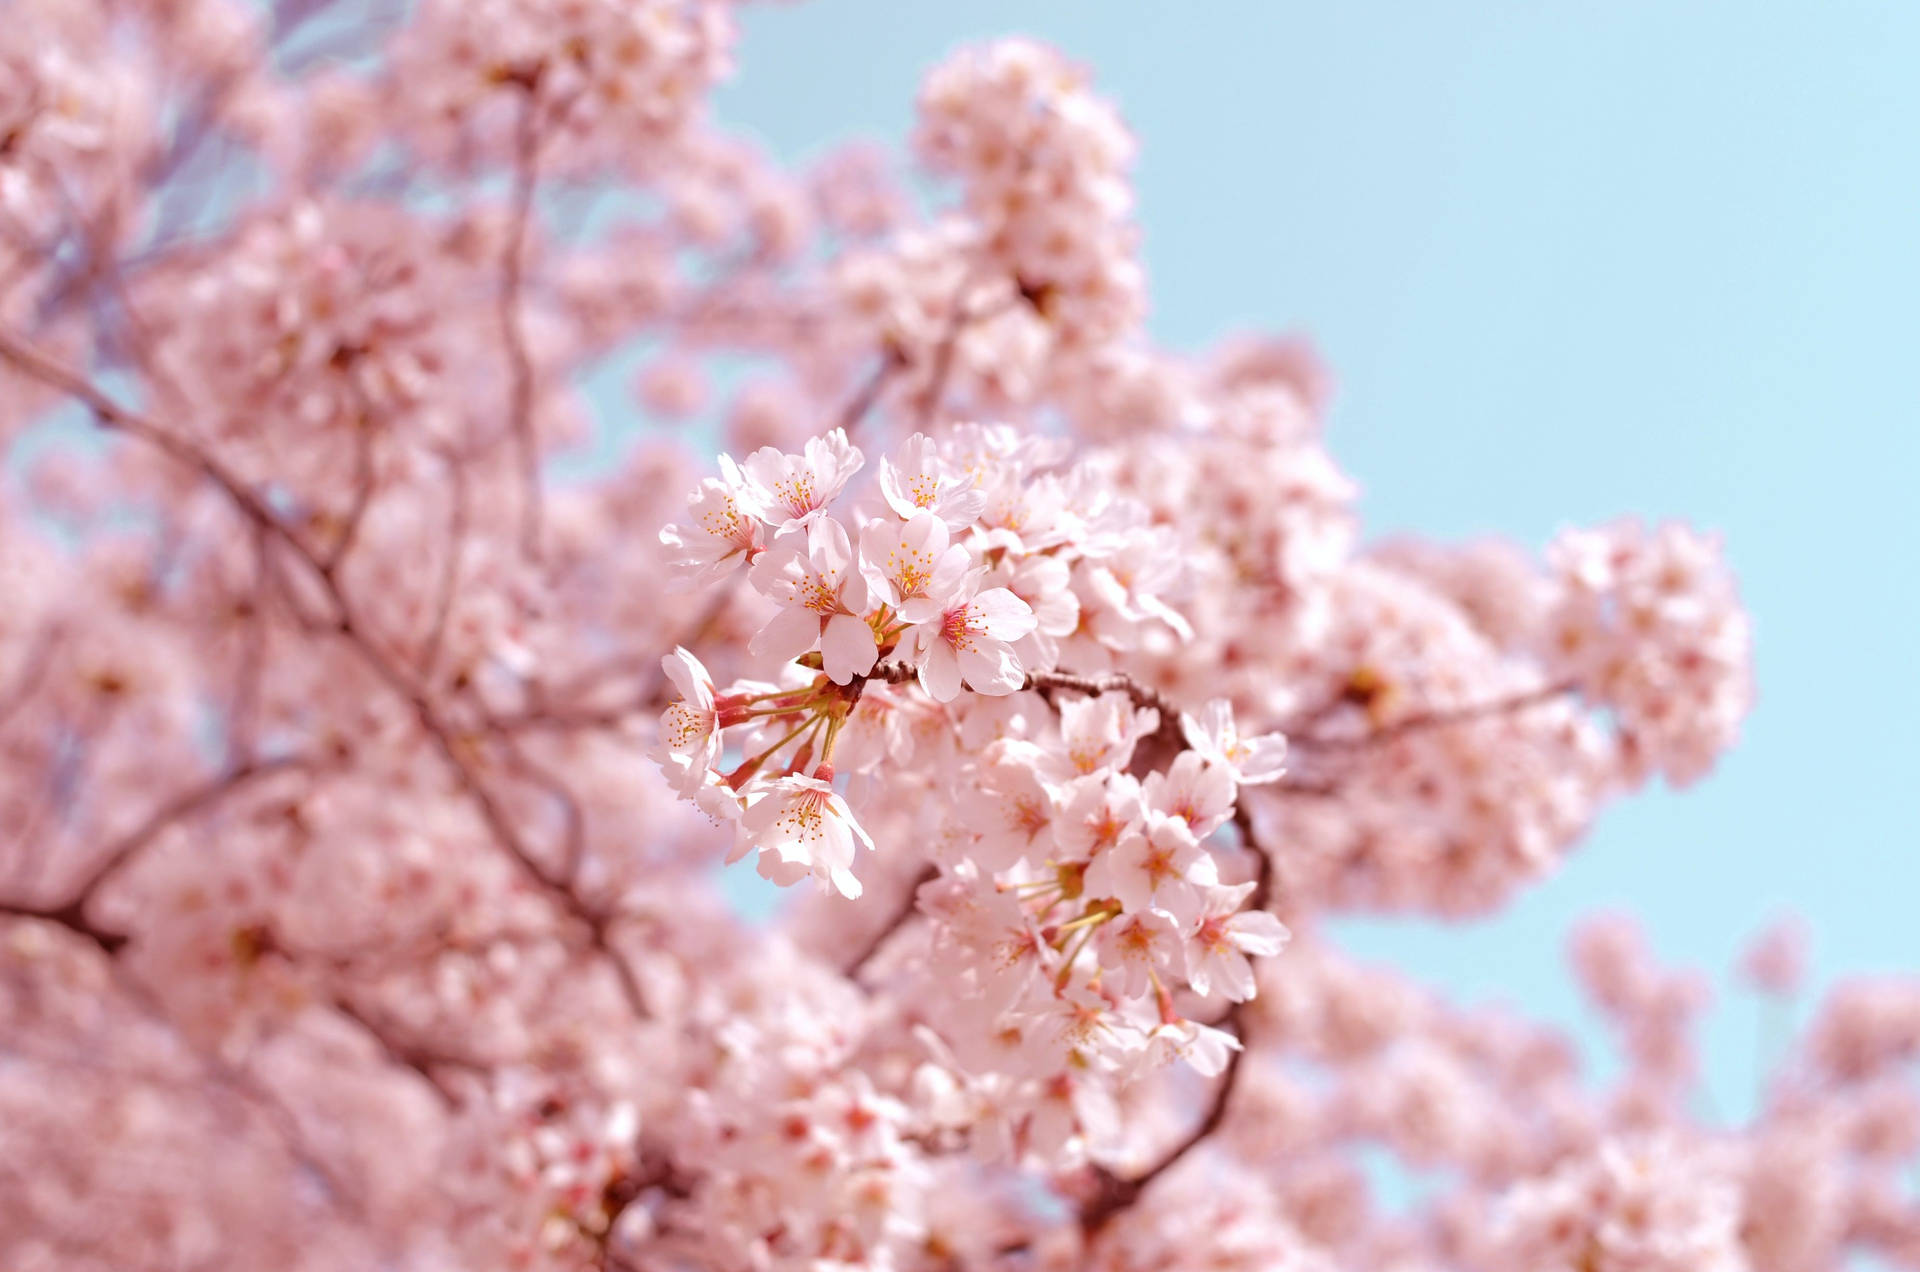 Hình nền mùa xuân: Hãy cùng chào đón mùa xuân với những hình nền đầy màu sắc và sinh động. Từ những bông hoa đào tới những cánh hoa anh đào, hình nền này sẽ mang đến cho bạn một tâm trạng vui tươi và phấn chấn mỗi ngày.